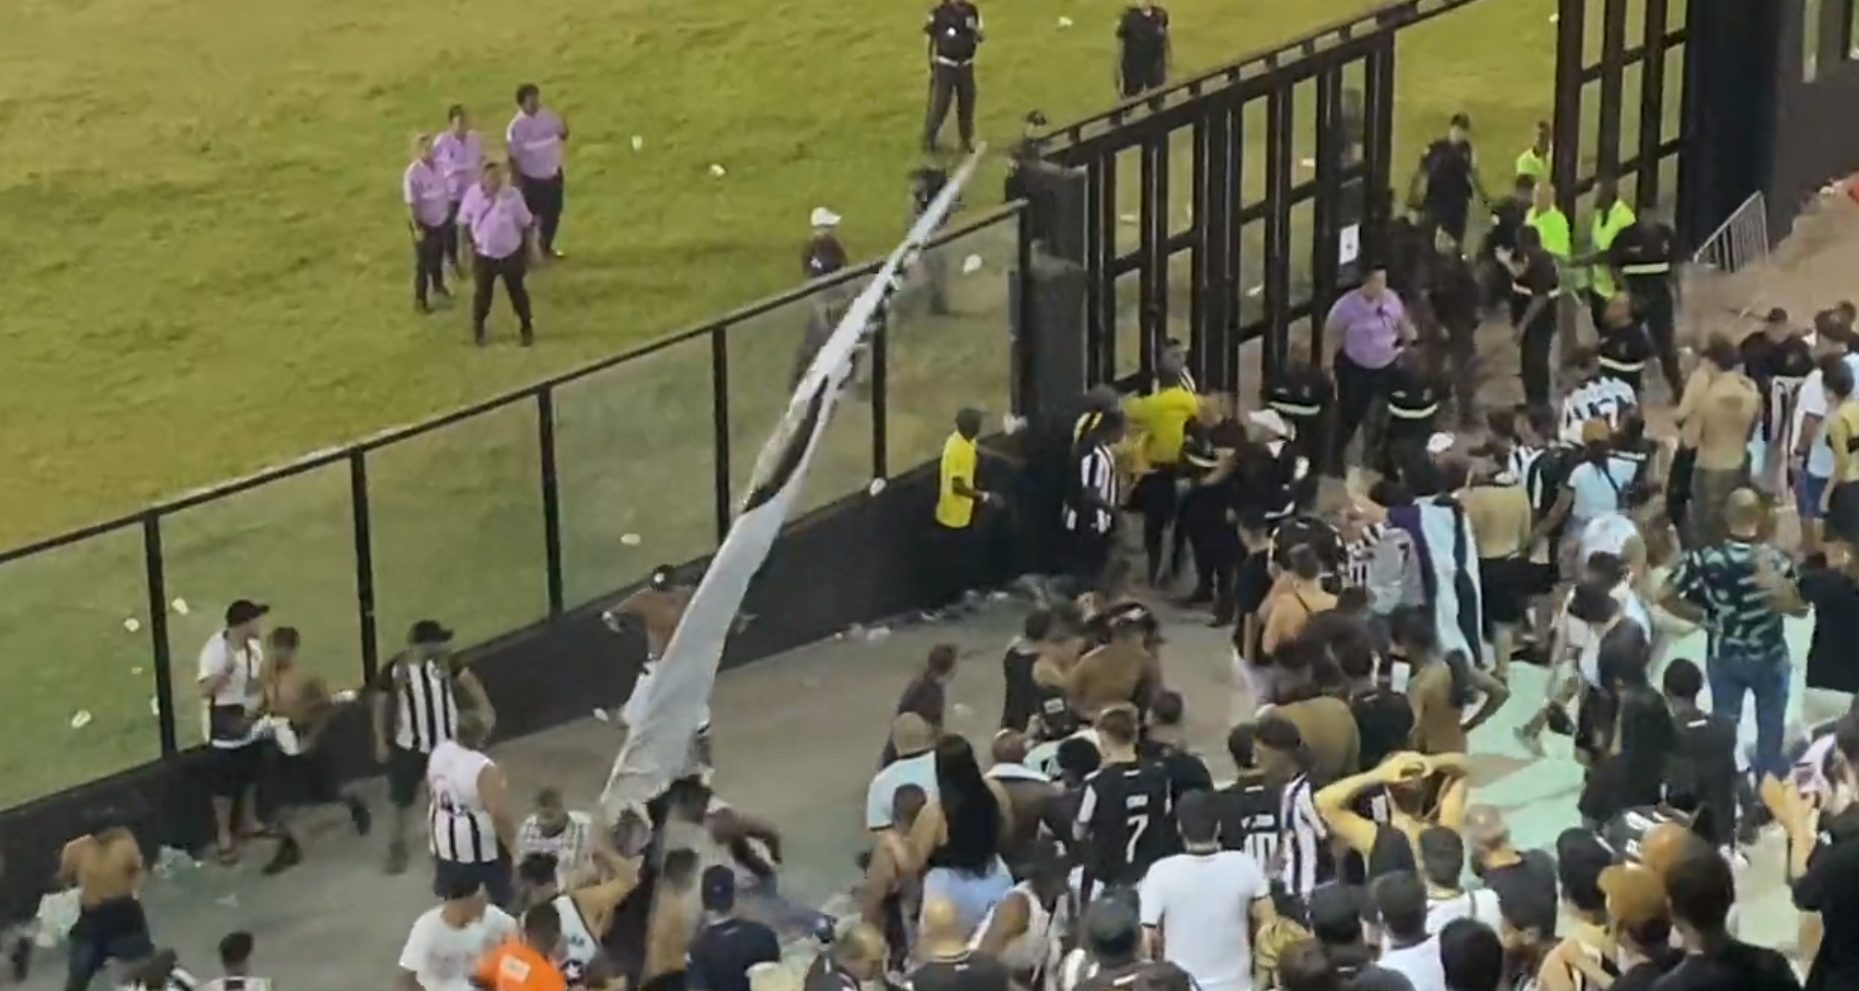 Torcida do Botafogo se envolve em briga após o jogo contra o Grêmio - Foto: Reprodução/ X @m_guimaraes94